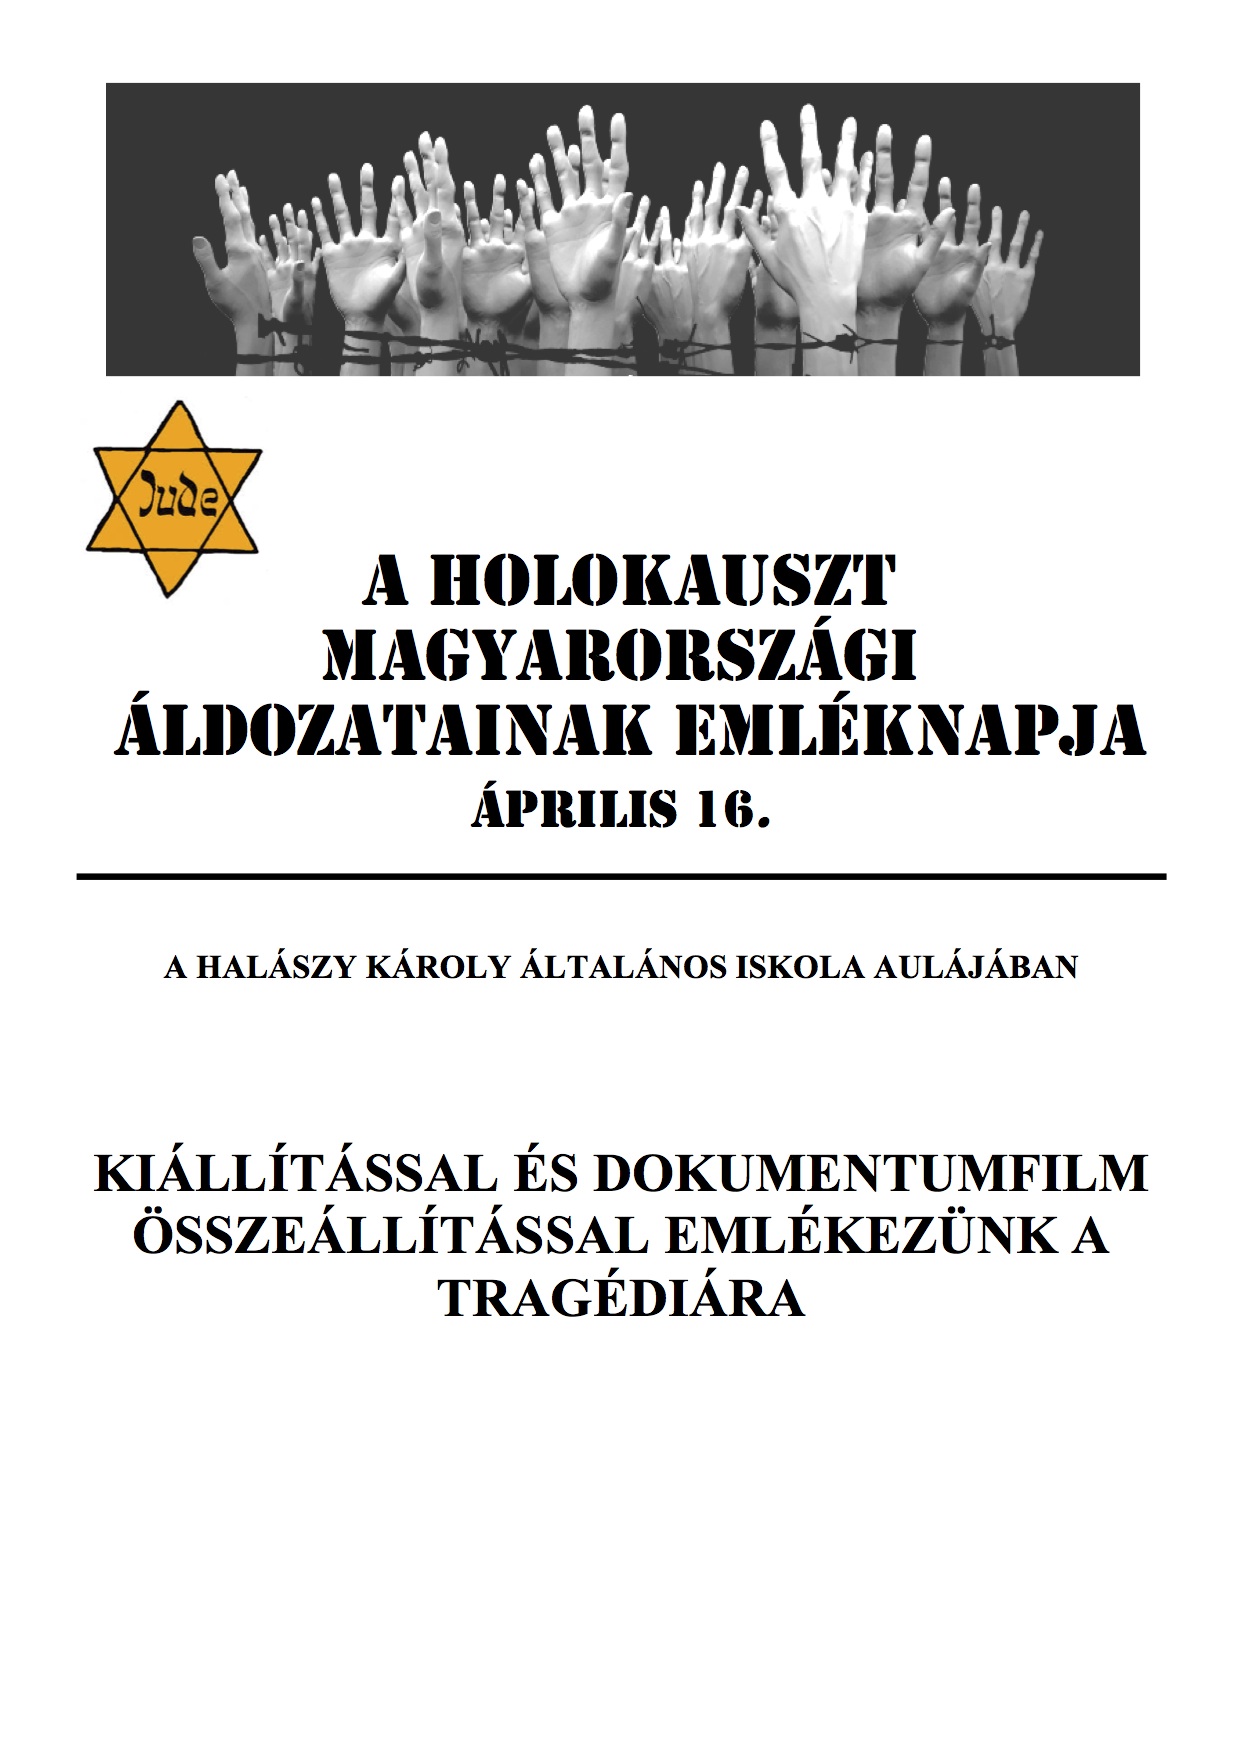 Holokauszt Áldozatainak Emléknapja plakát